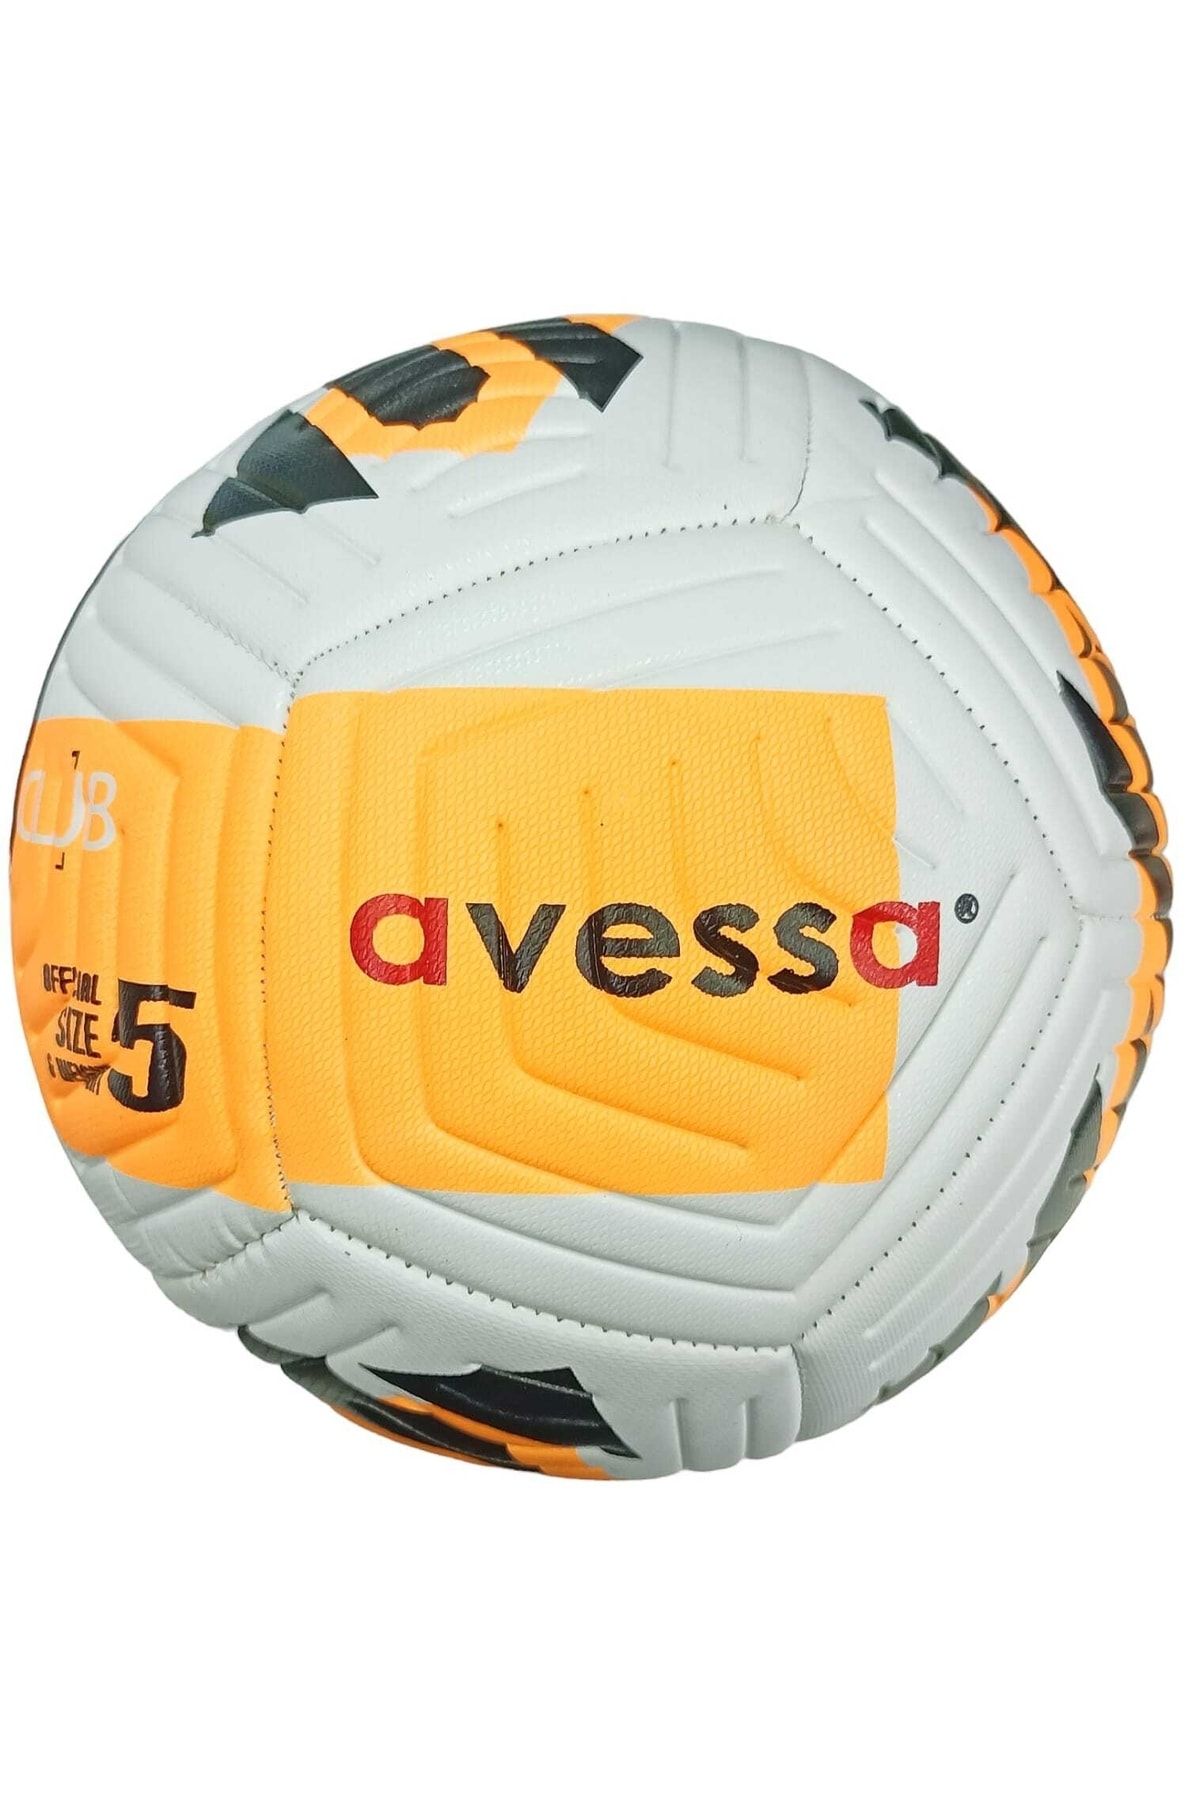 Avessa Ft-400 Futbol Topu No.5 425 Gr